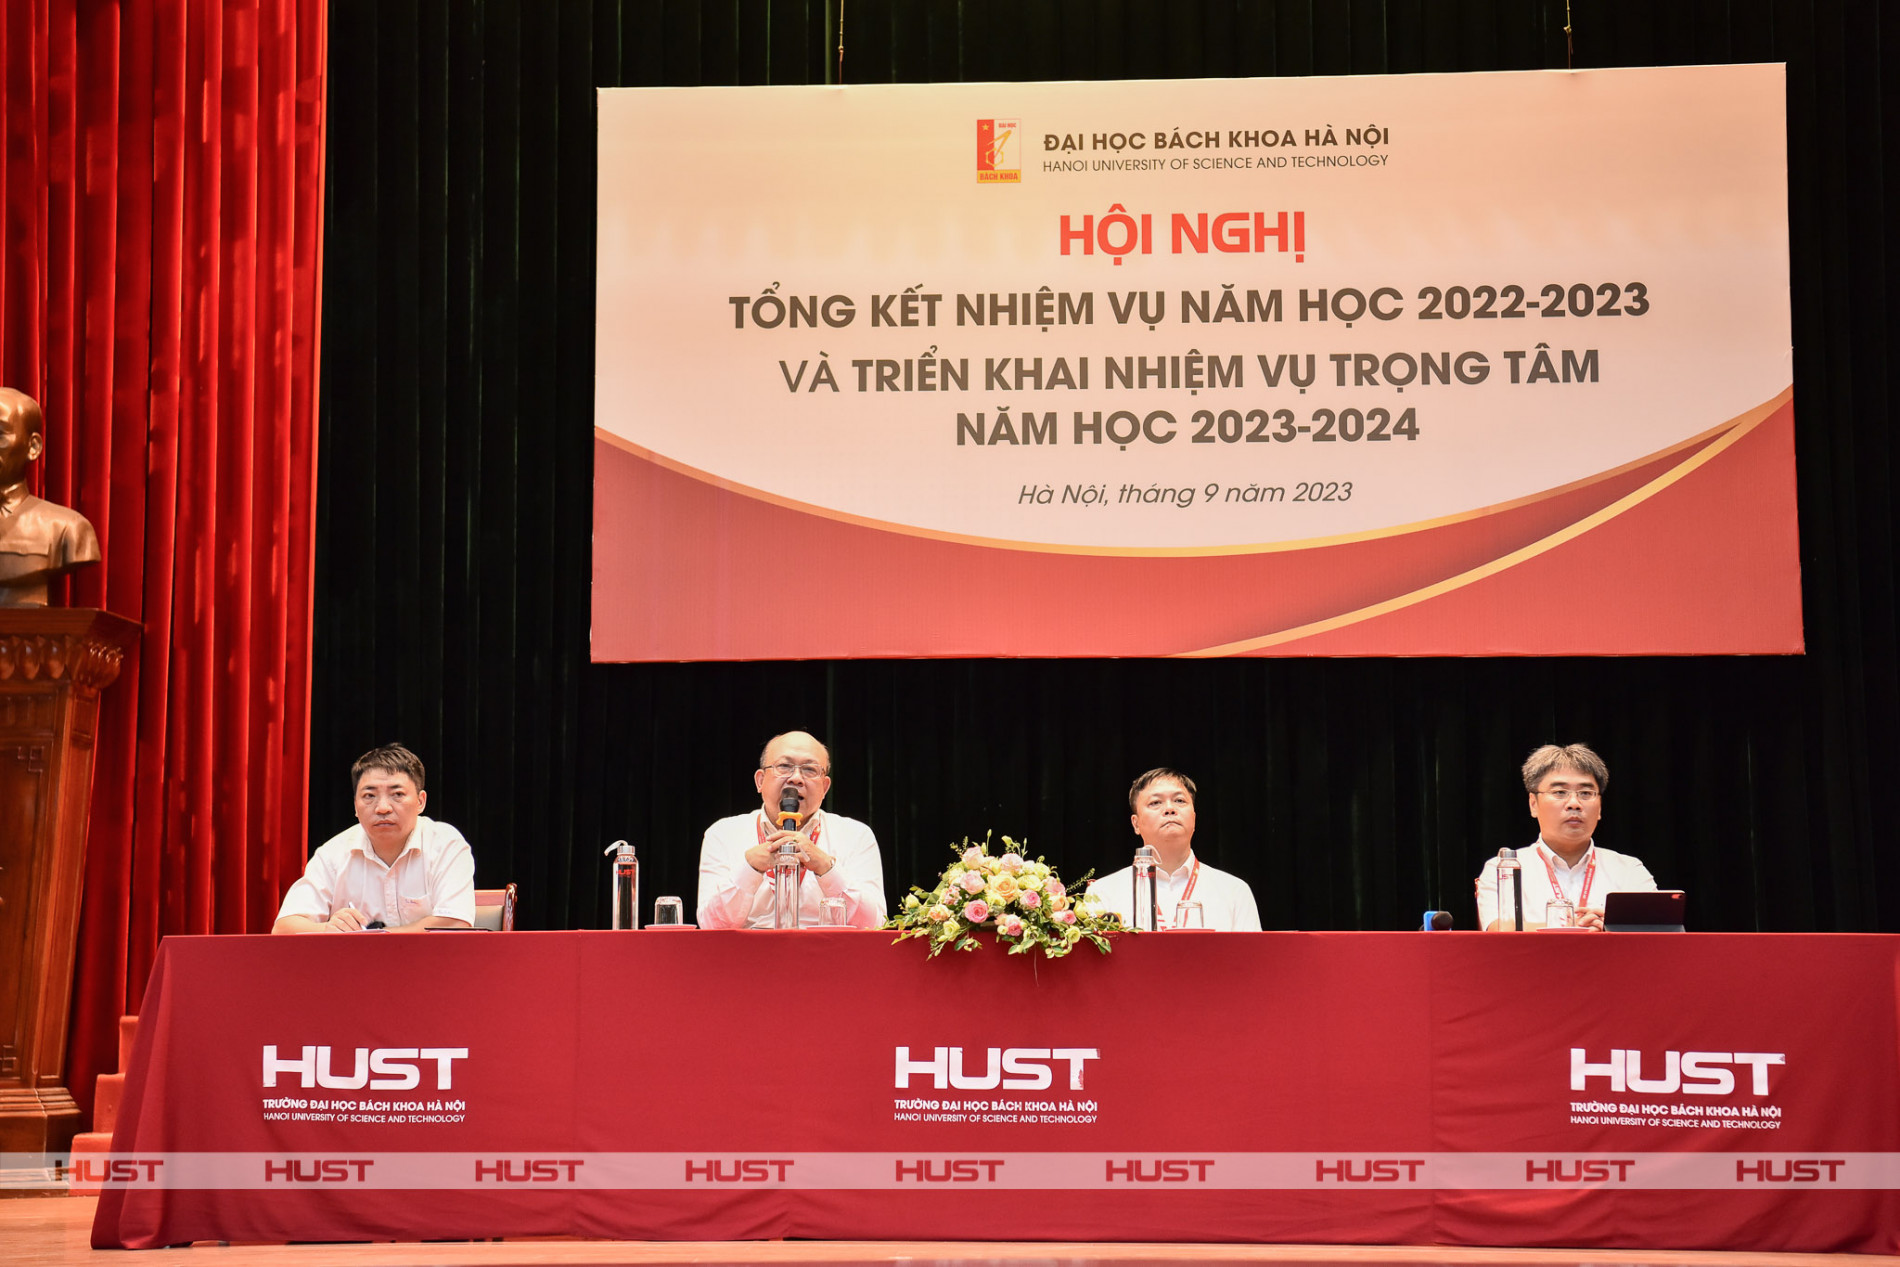 Năm học 2023-2024 của Bách khoa Hà Nội sẽ mang đến nhiều kết quả đáng mong đợi cho sự phát triển của đất nước